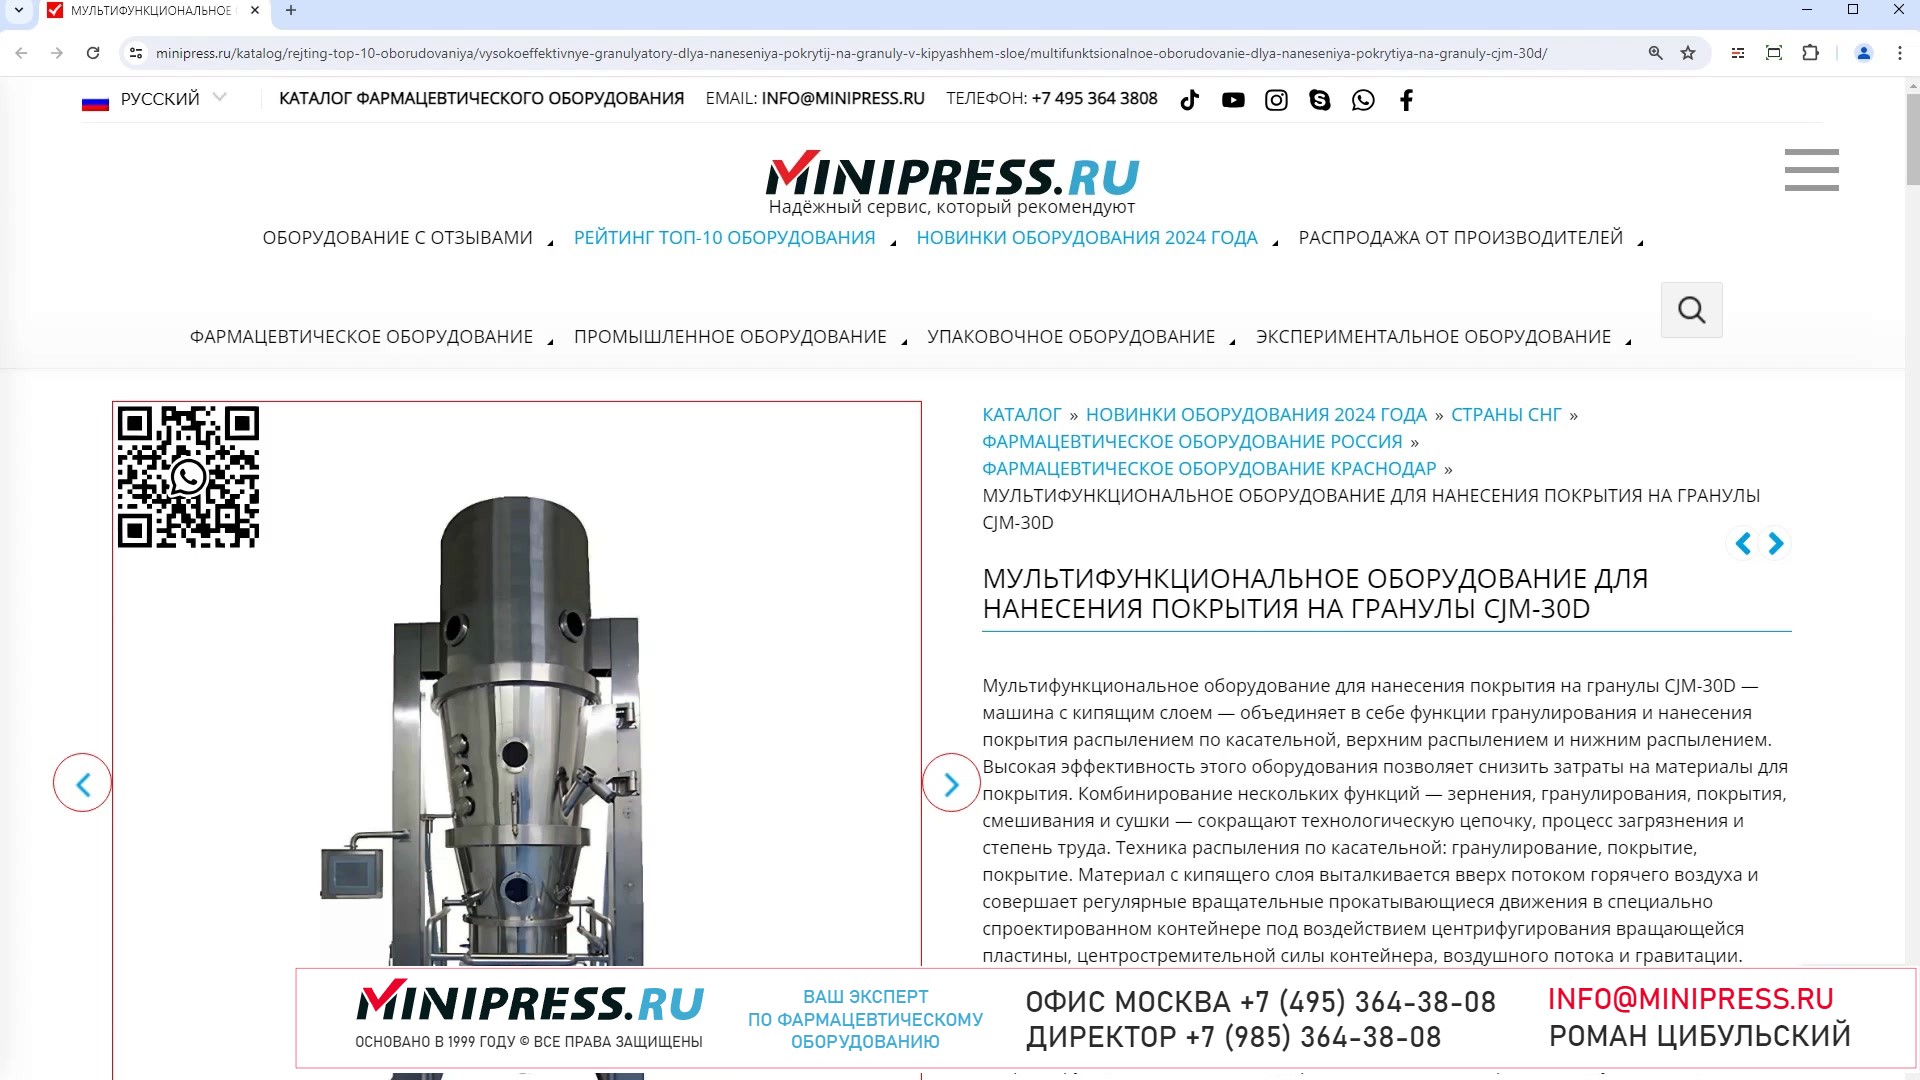 Minipress.ru Мультифункциональное оборудование для нанесения покрытия на гранулы CJM-30D